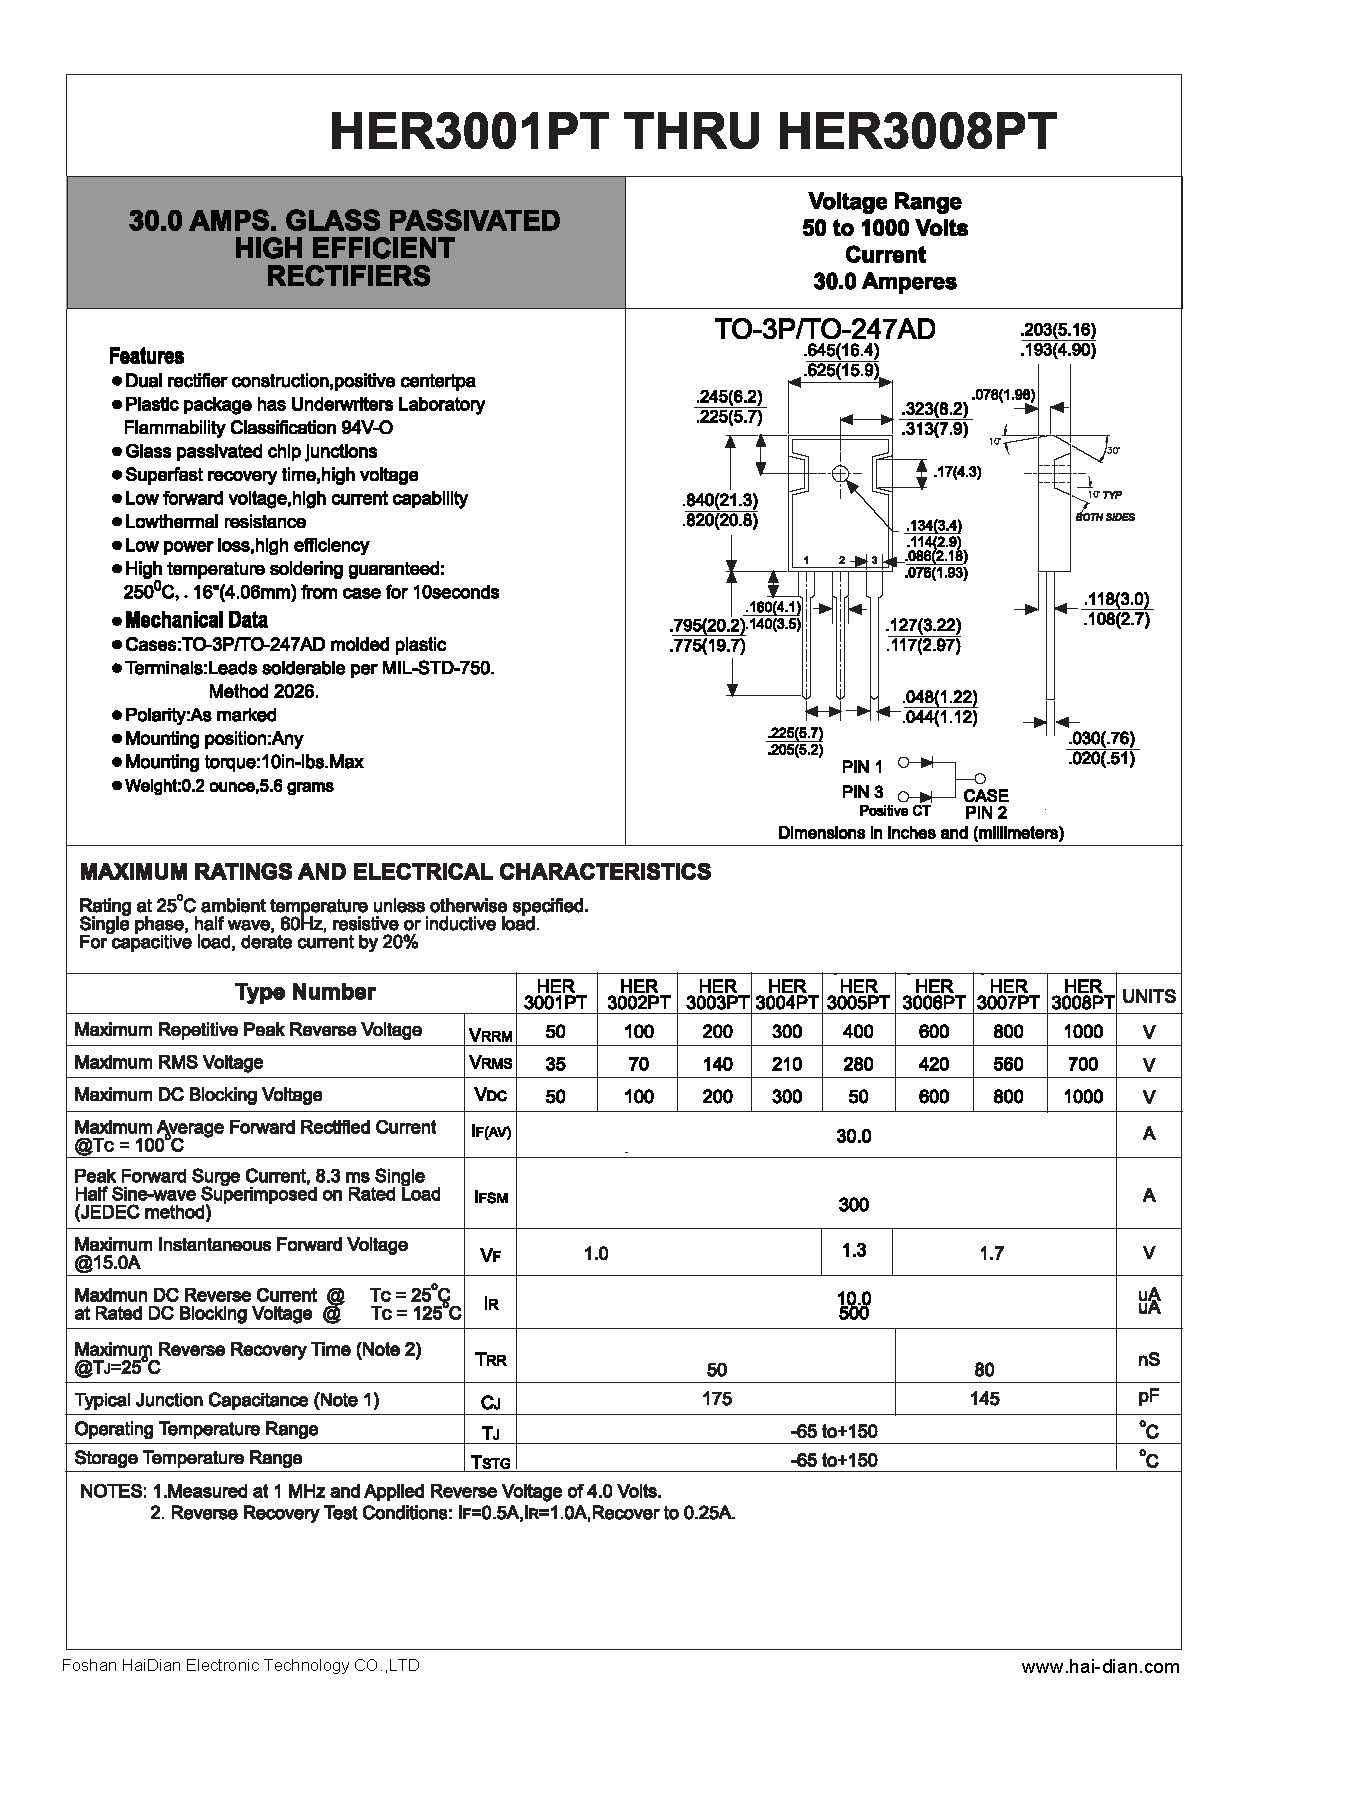 HER3003PT高效整流二极管-- 佛山海电电子科技有限公司